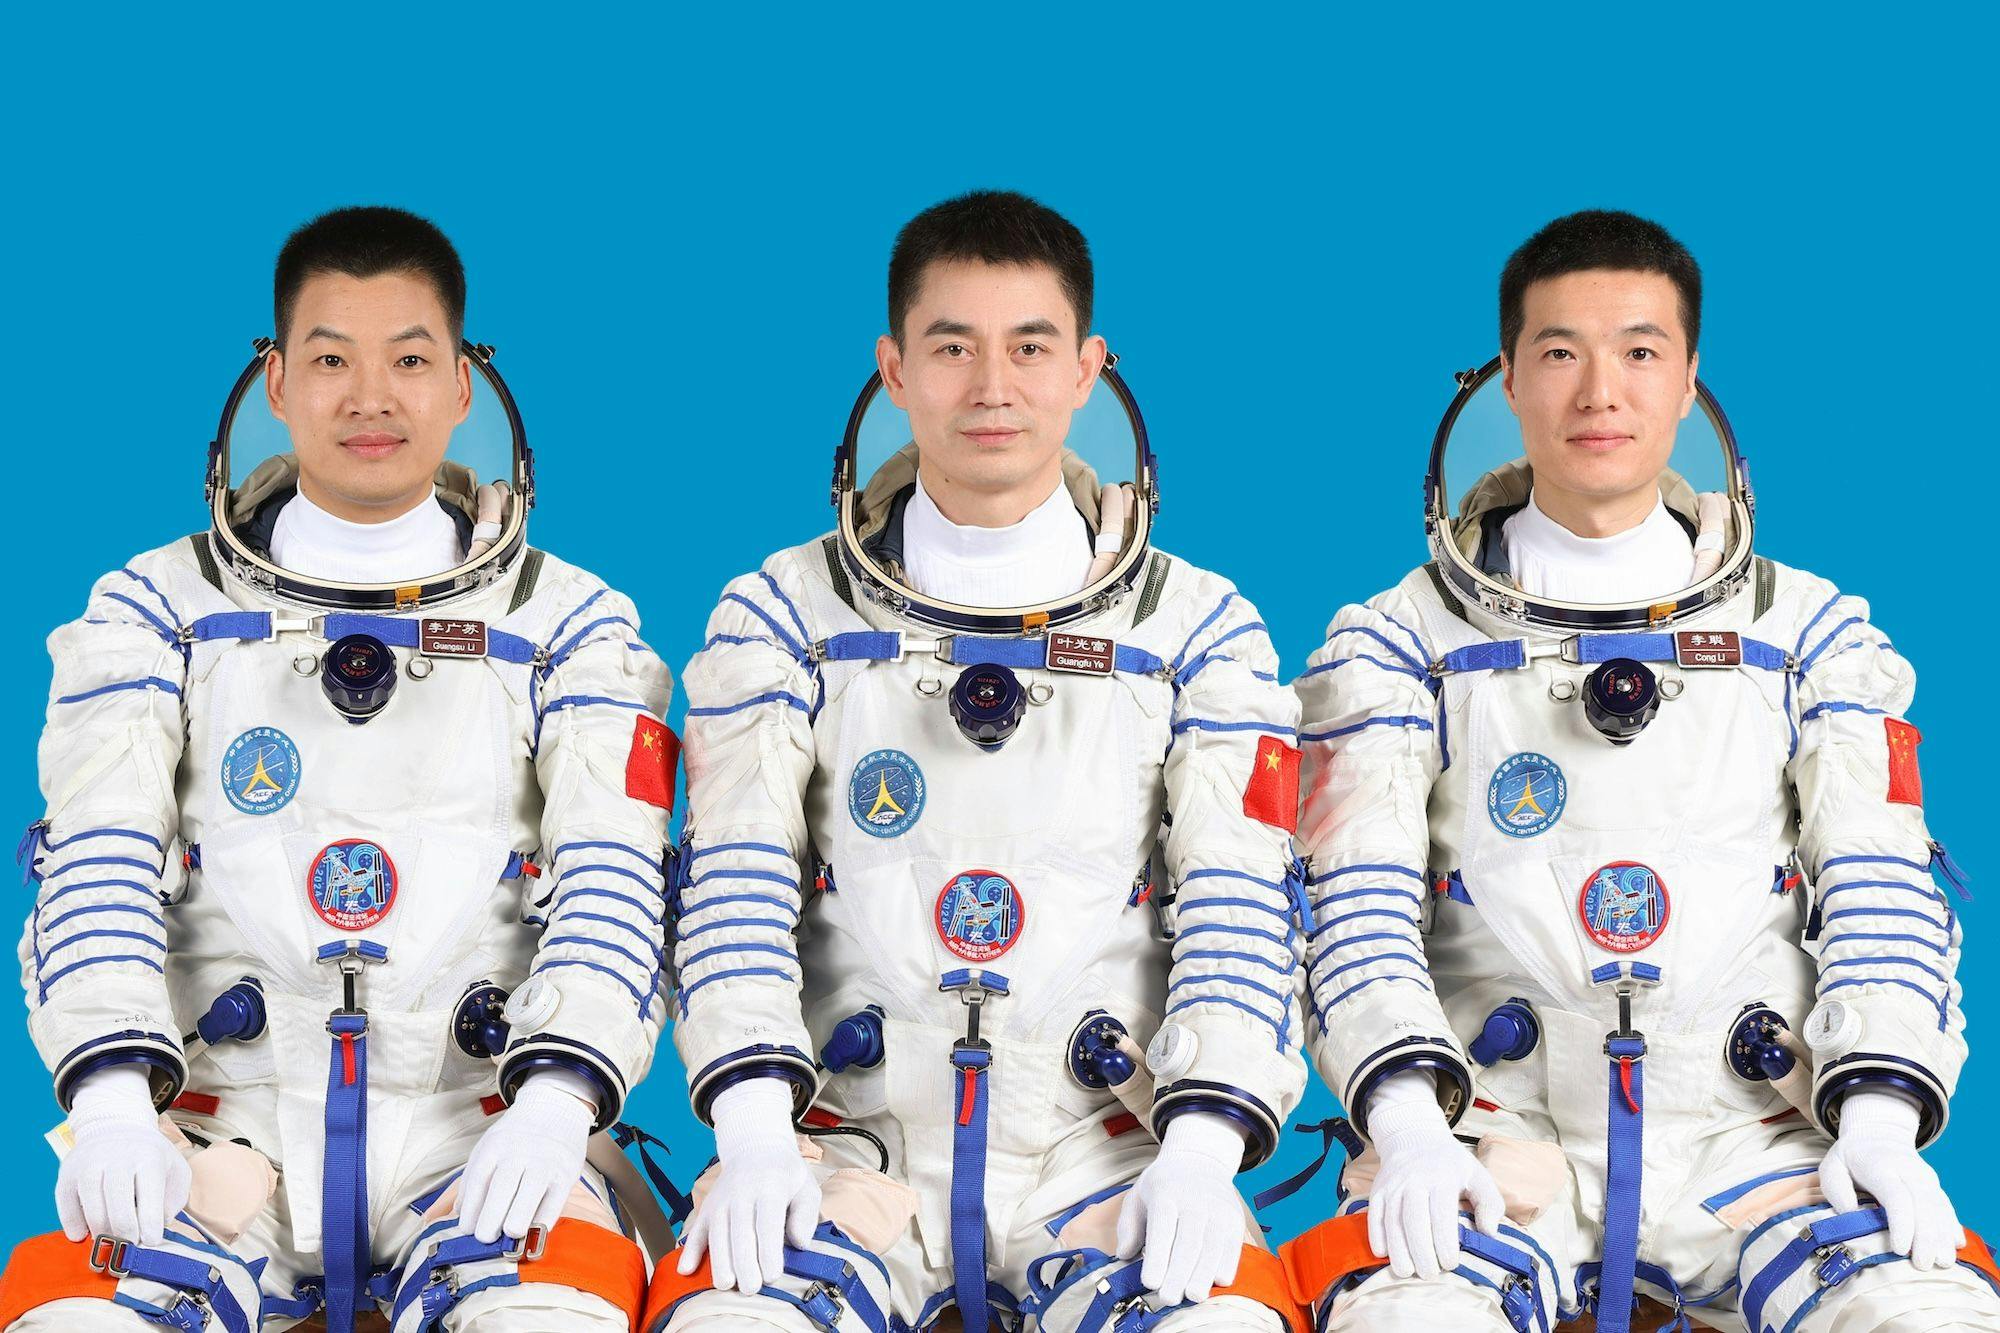 China Raumfahrtindustrie, Raumfahrt, Astronauten, Industrie, Wirtschaft, Technik, Hightech: Die chinesischen Astronauten Ye Guangfu (C), Li Cong (R) und Li Guangsu, die an der Shenzhou-18-Raumfahrt teilnehmen werden